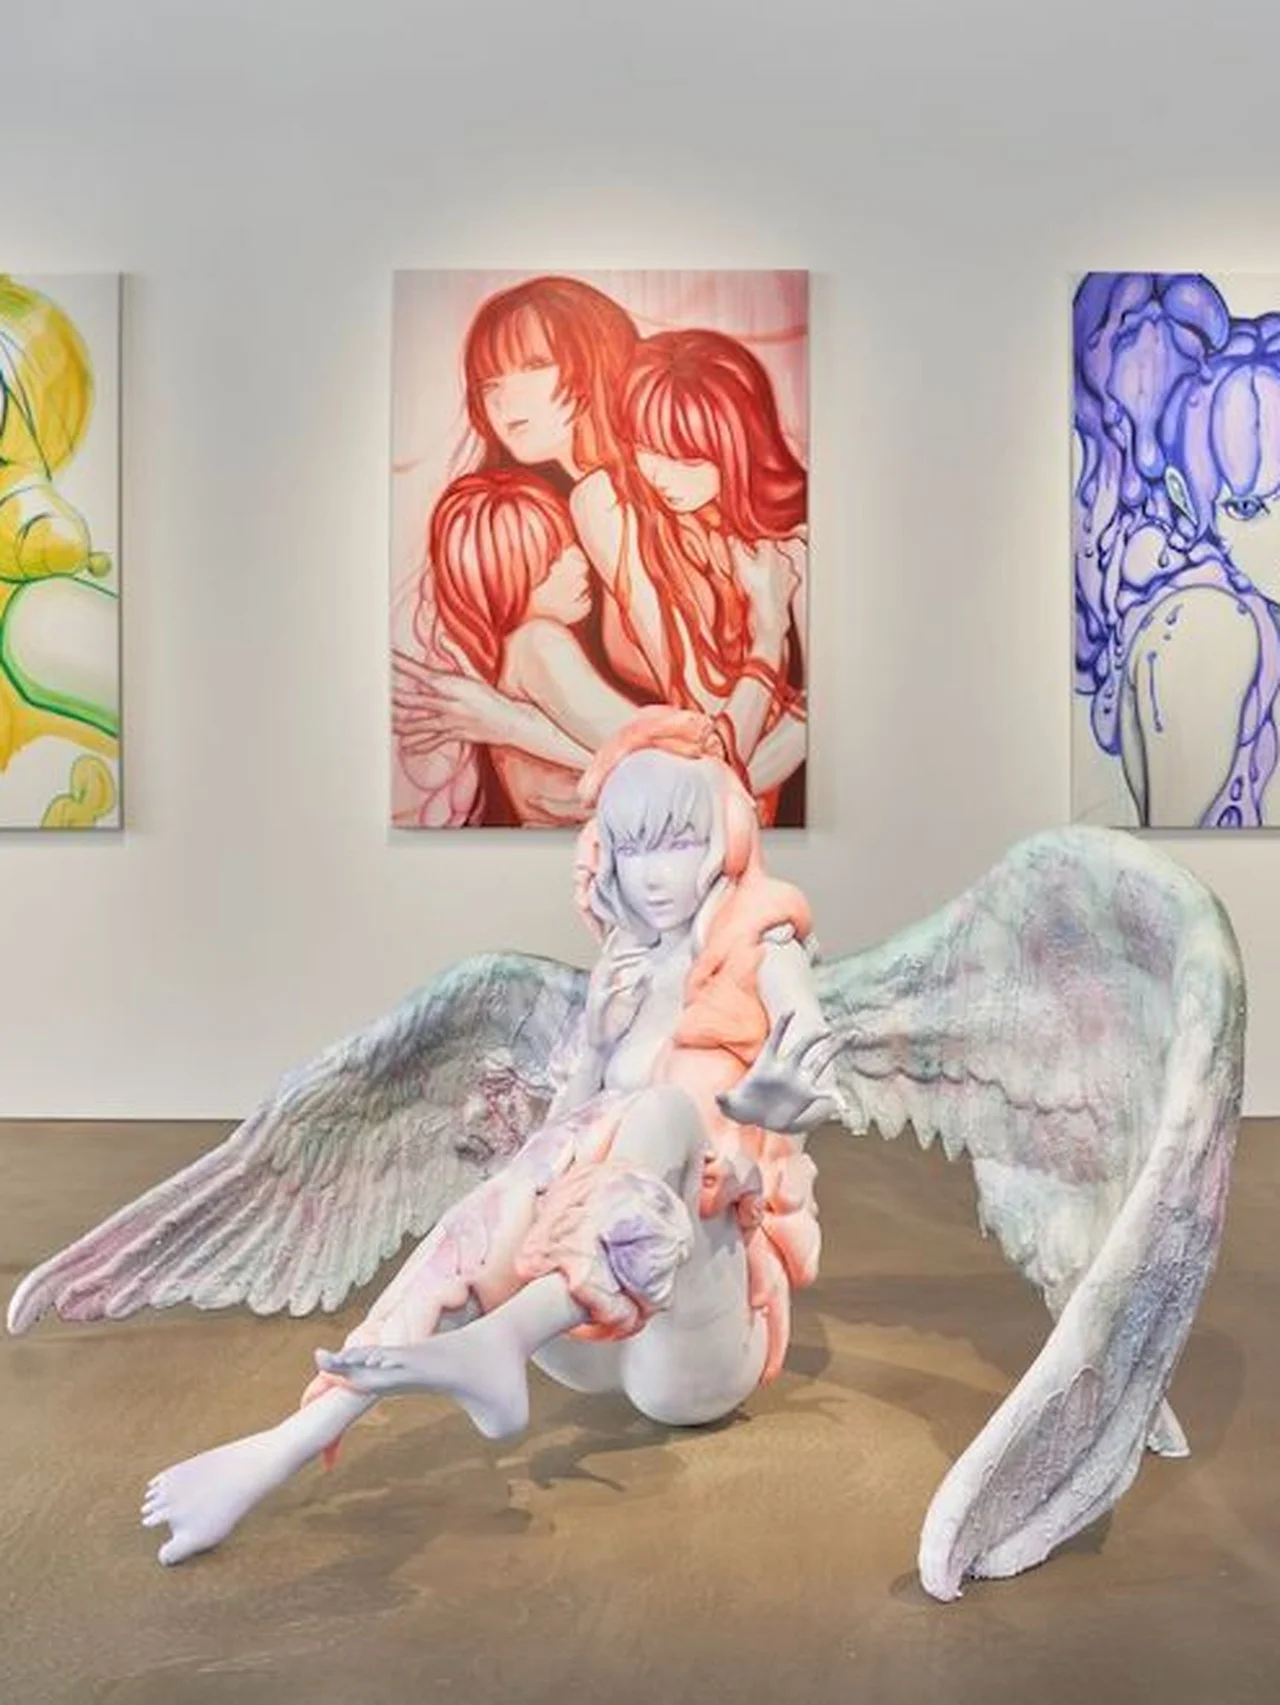 神田神保町に注目の新ギャラリーがオープン。YOASOBI「夜に駆ける」のMVを手がけたアーティスト、ninaが初個展を開催中